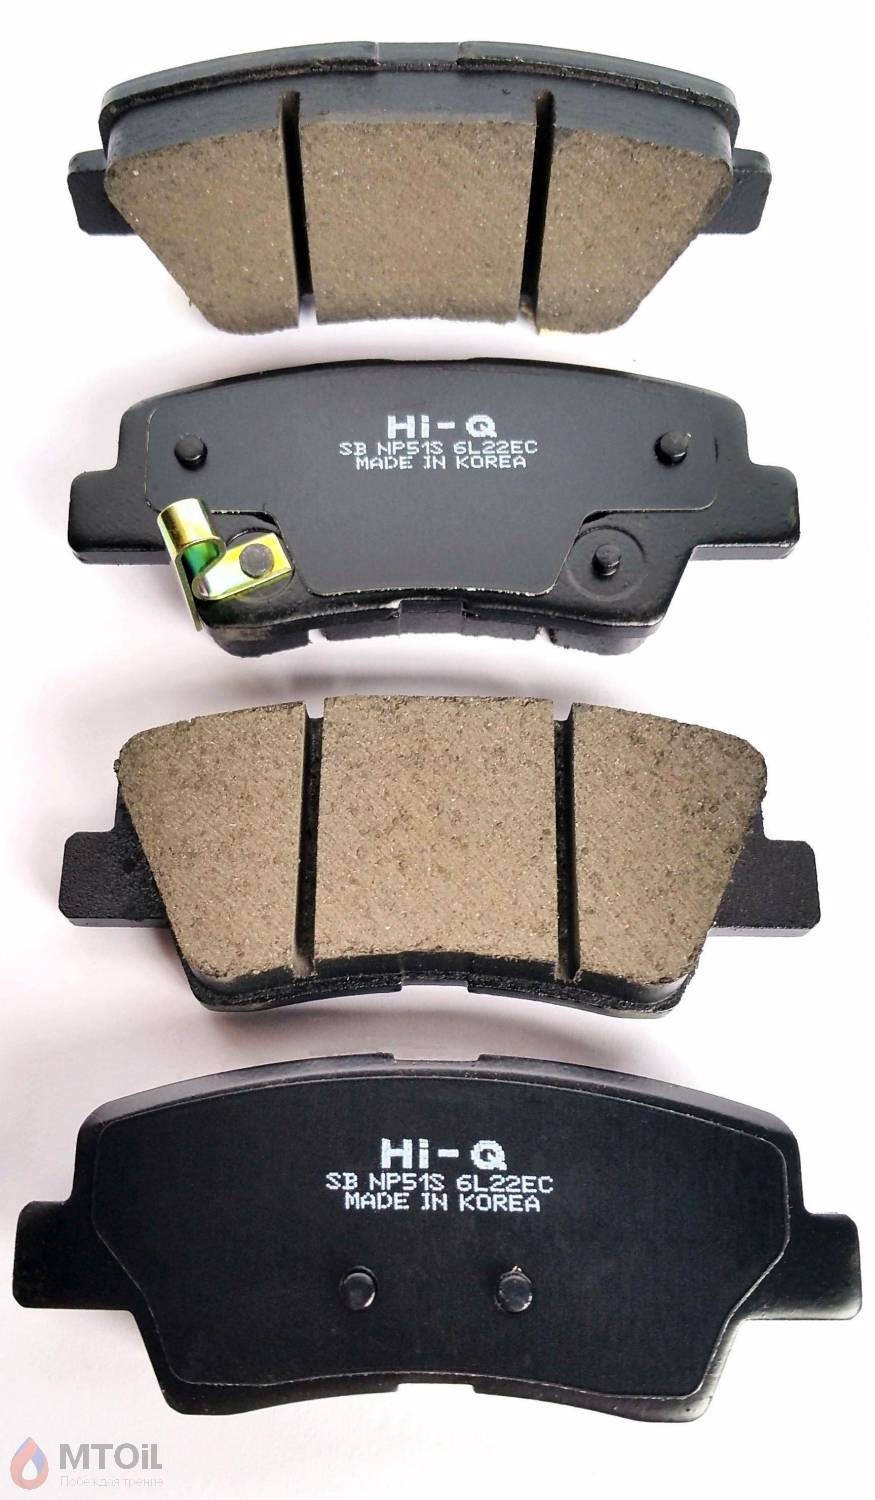 Тормозные колодки HI-Q Brake Pad (SP-1239) - 2